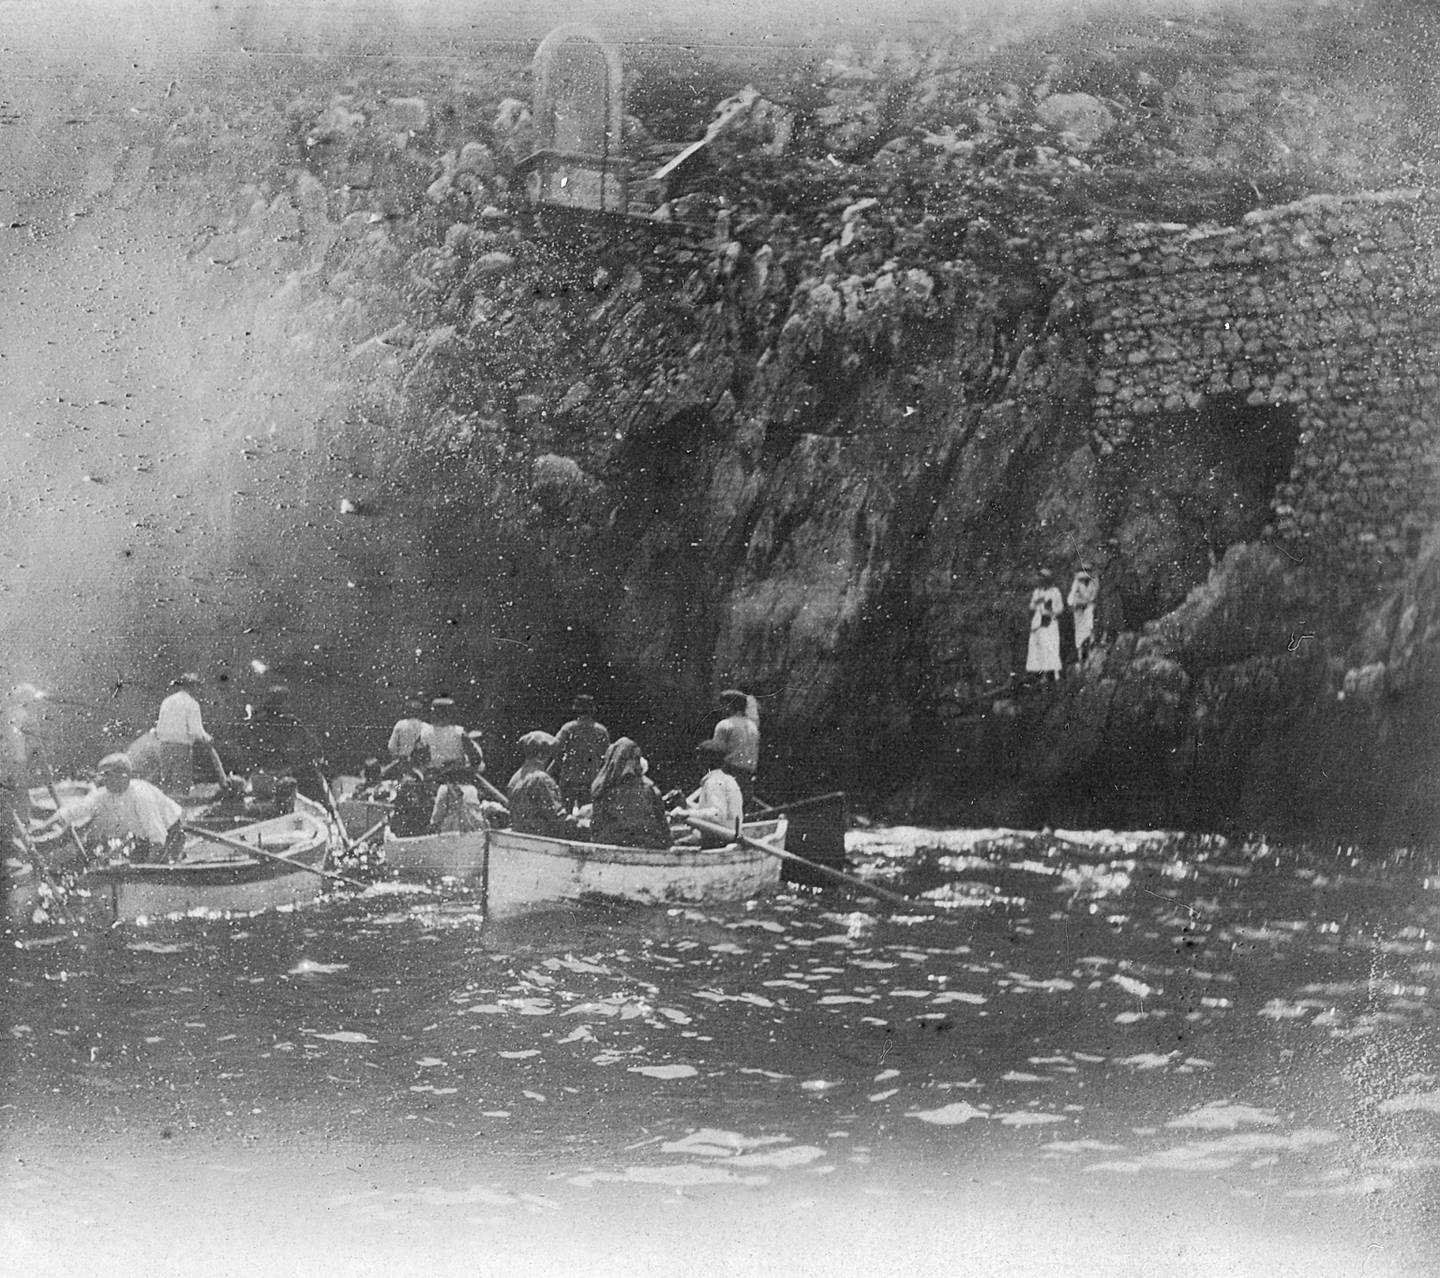 Fotografia in bianco e nero di persone su diverse barche a remi dirette verso una grotta in riva al mare.